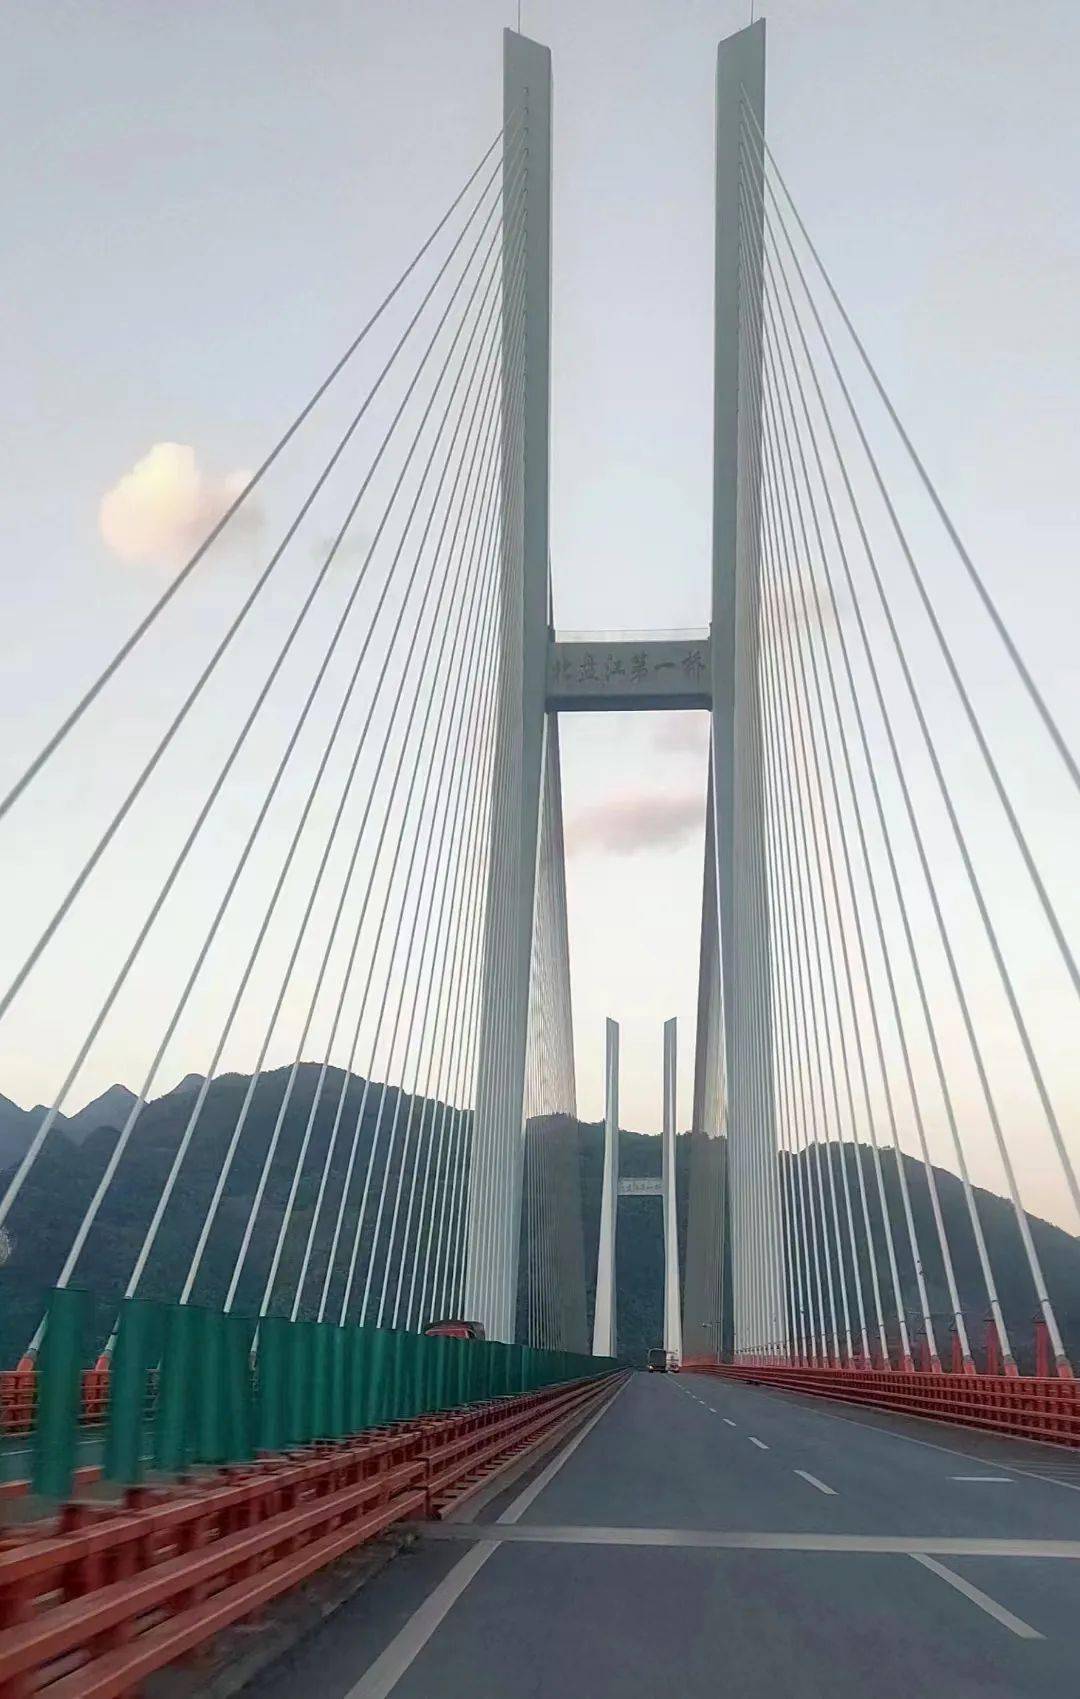 贵州六盘水大桥简介图片